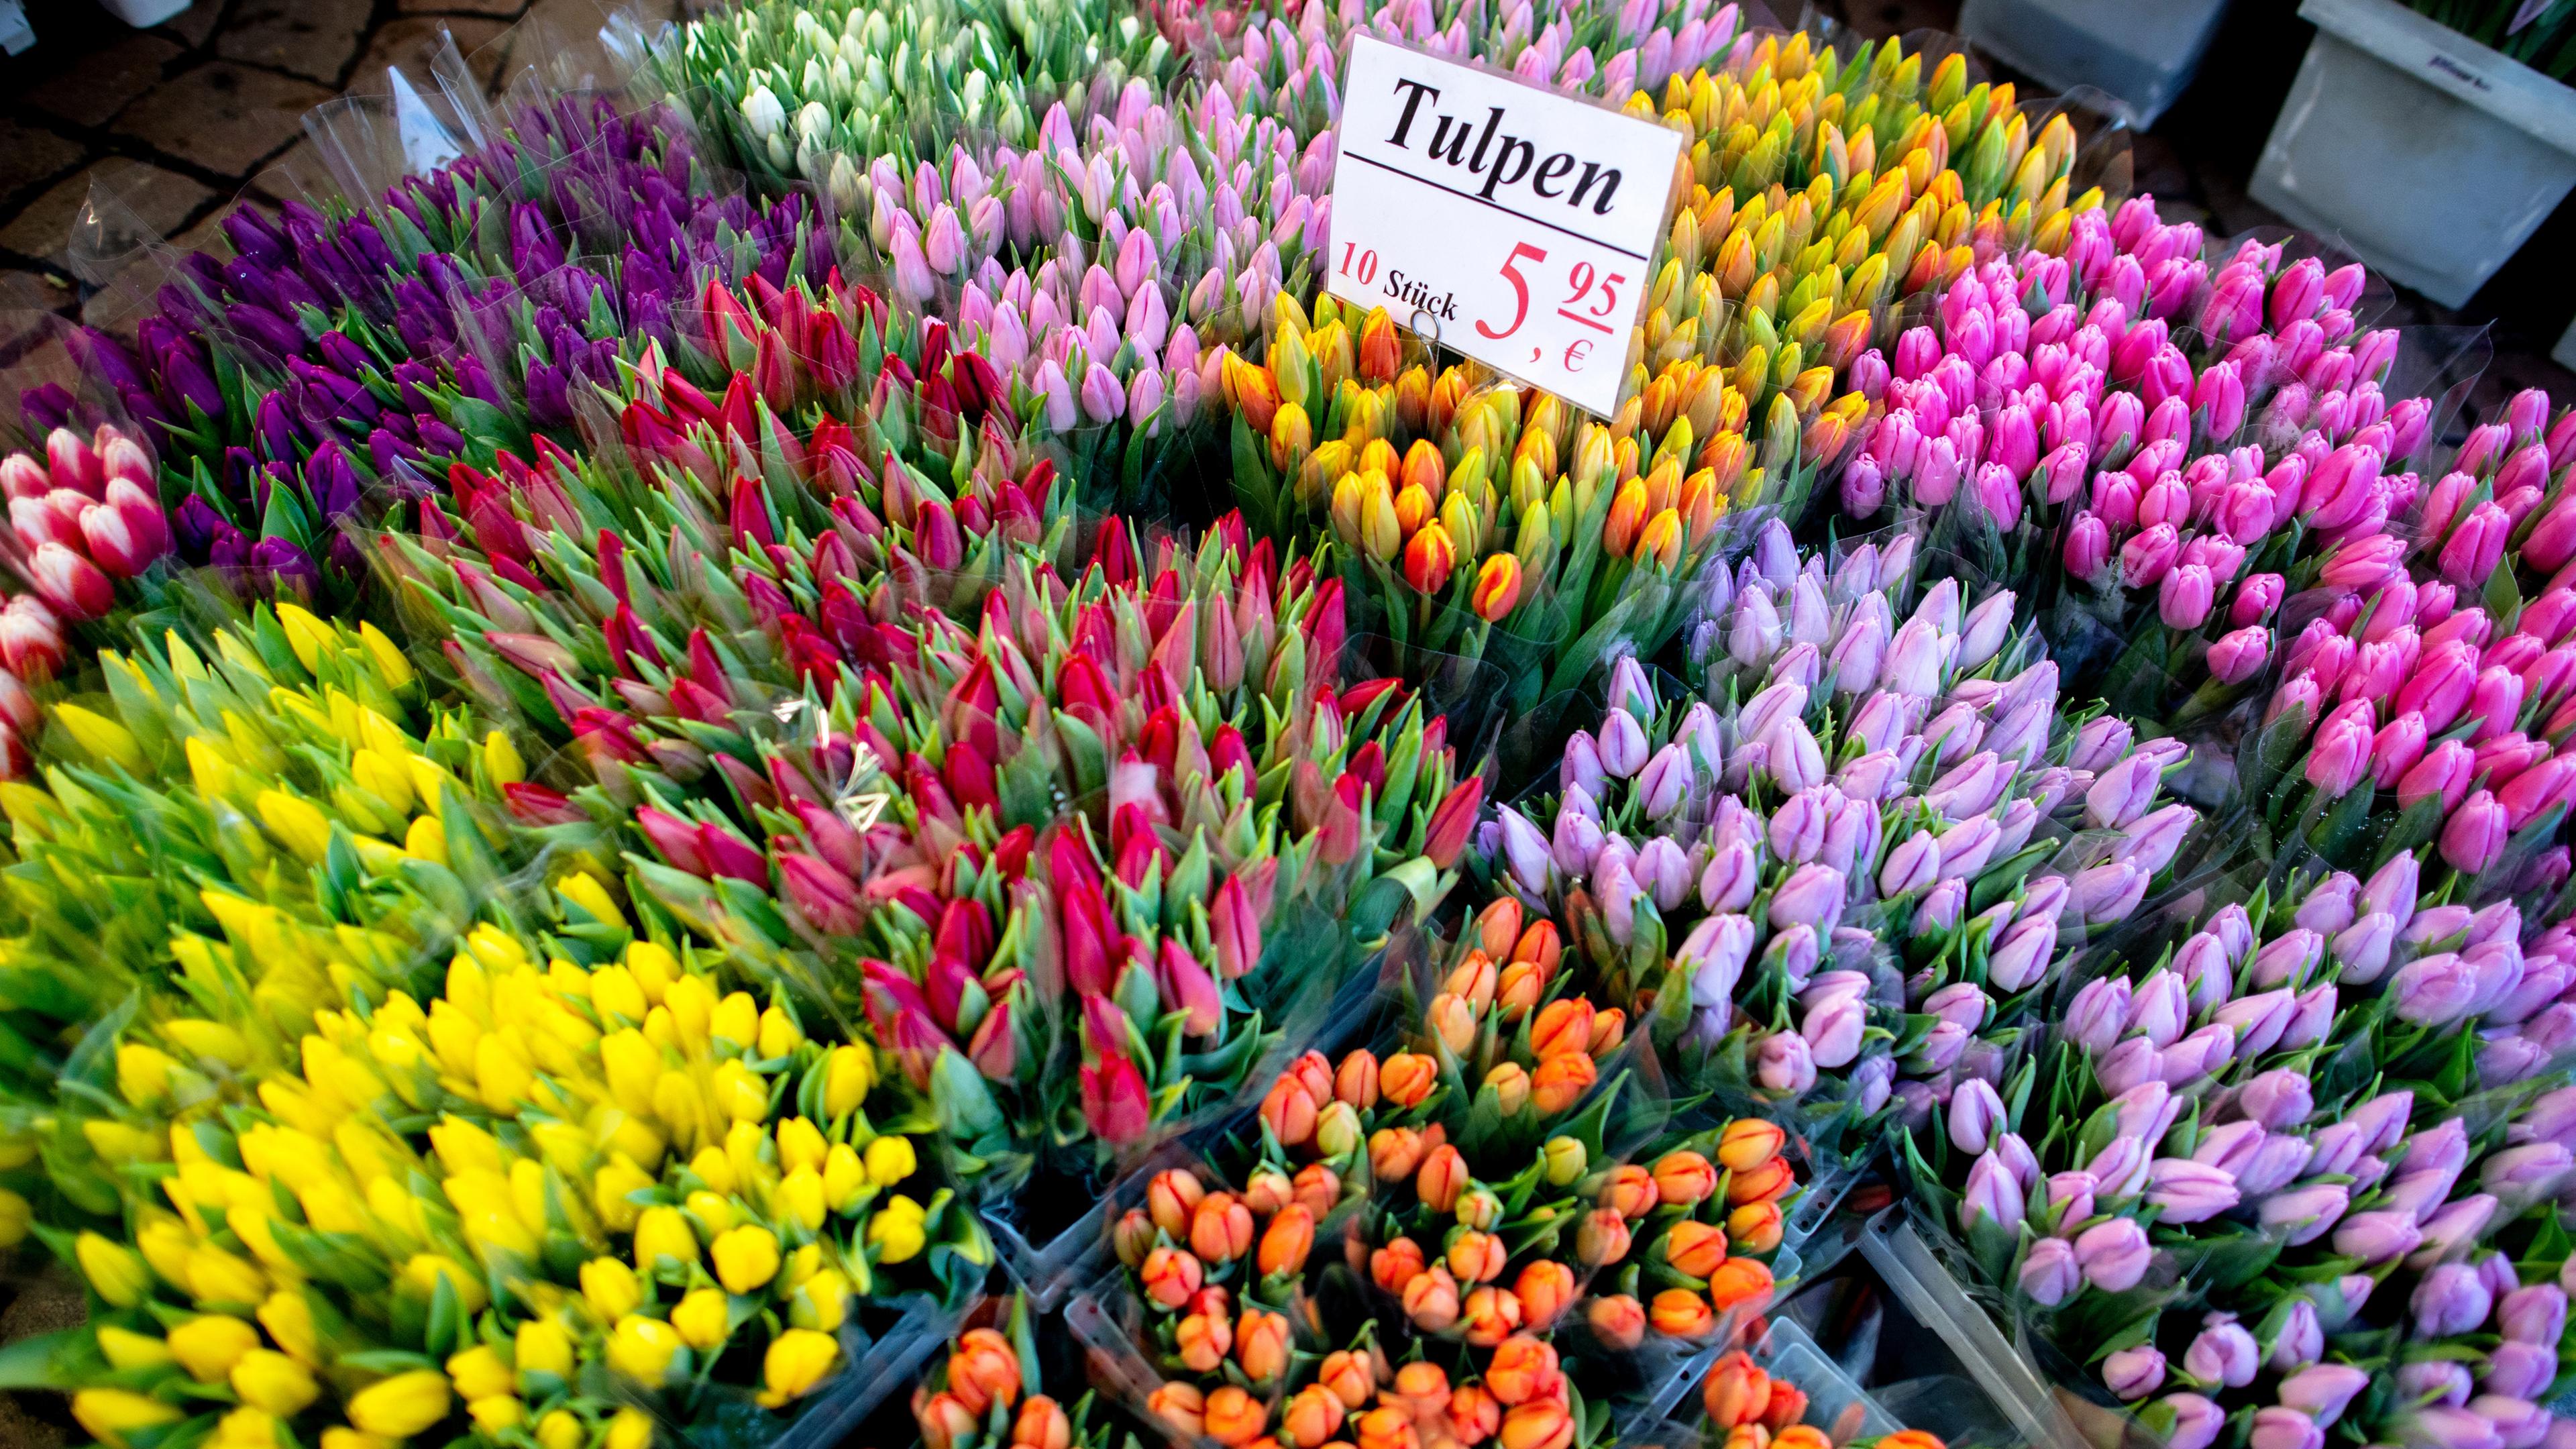 Tulpen auf dem Wochenmarkt